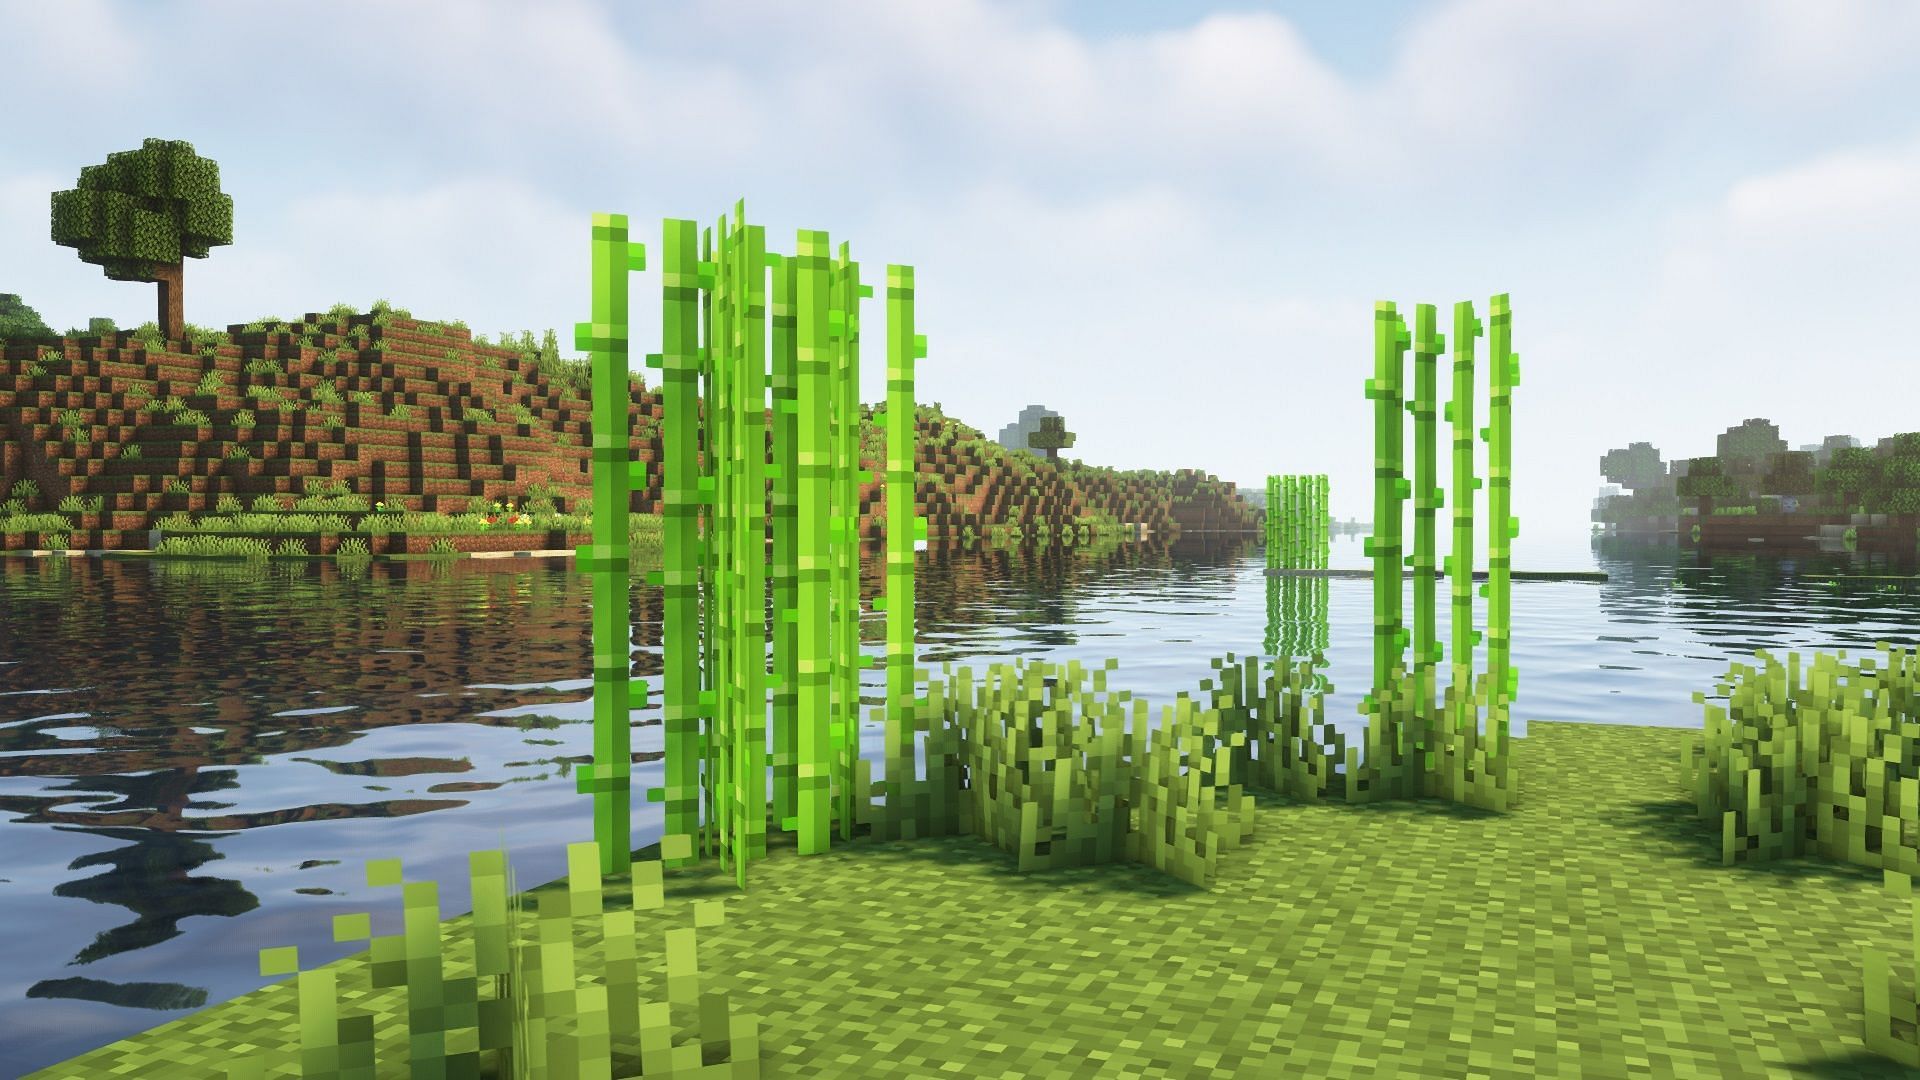 Naturally generated sugar cane in Minecraft (Image via Mojang)